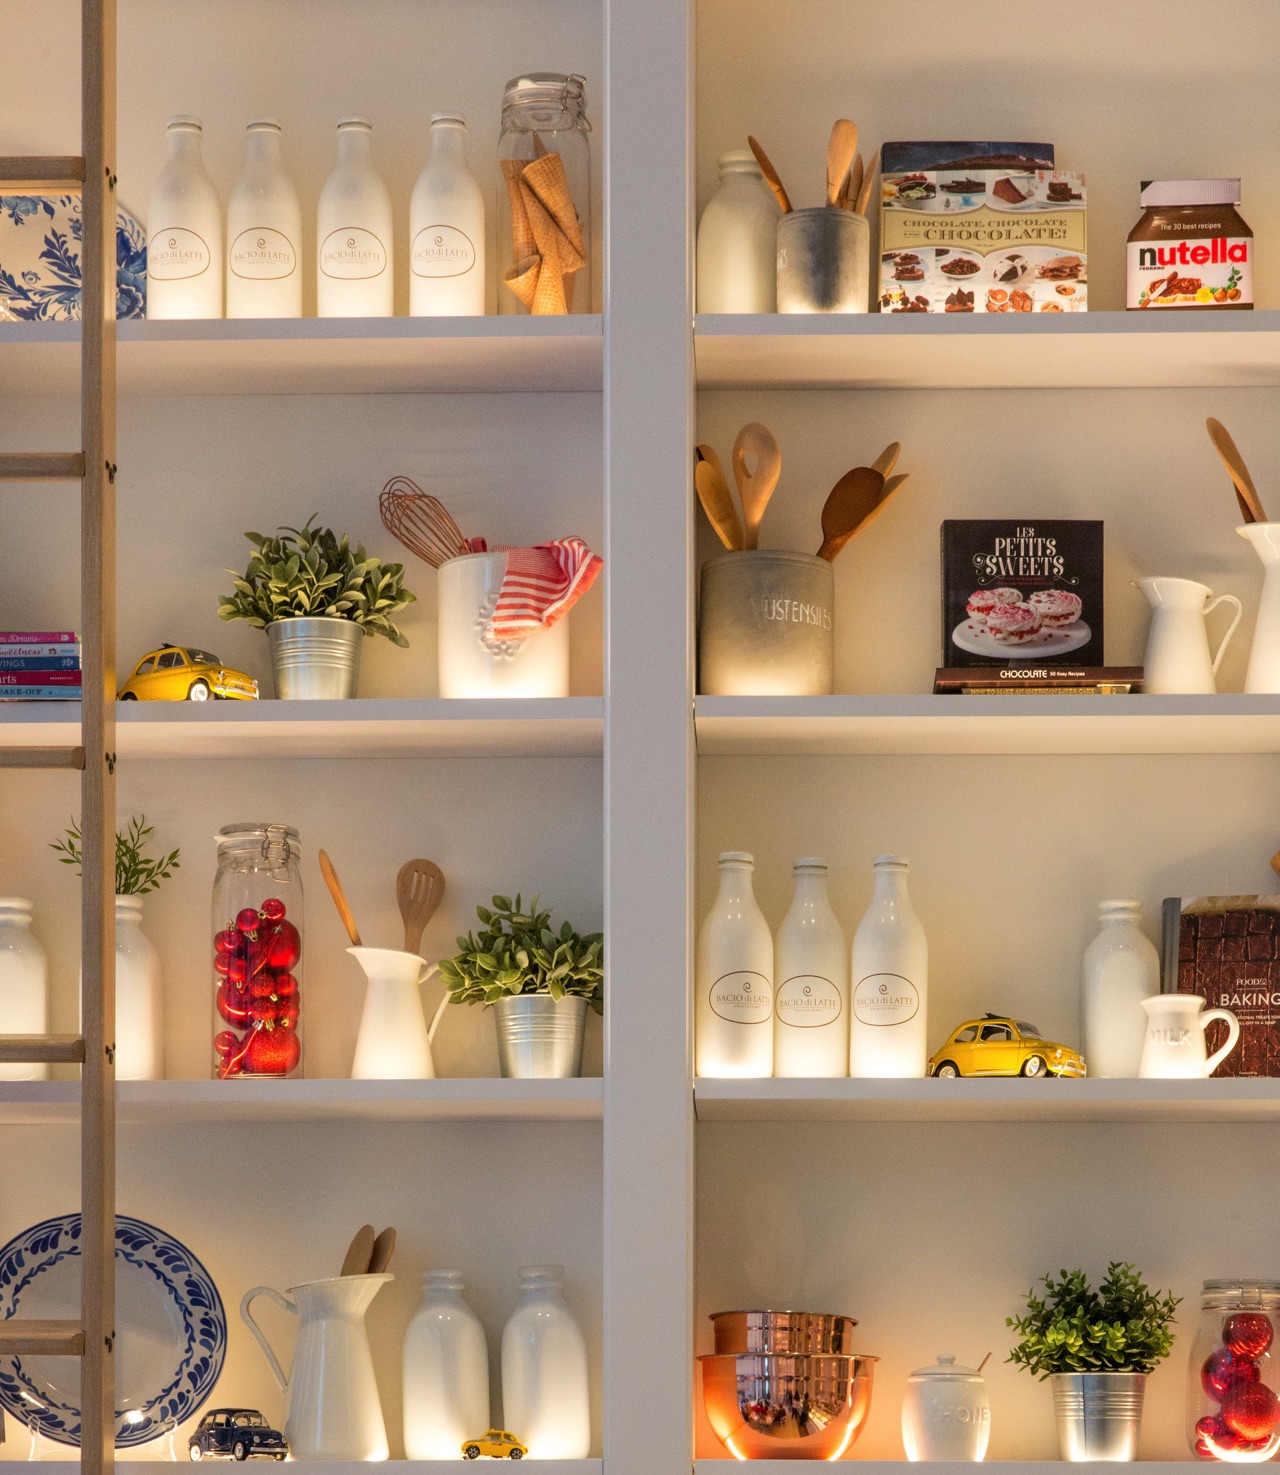 Weiße Keramikbehälter bilden die Basis in diesem schön ausgeleuchteten Küchenregal. Bunte Farbtupfer lockern die Komposition perfekt auf. Foto: Jason Leung | Unsplash